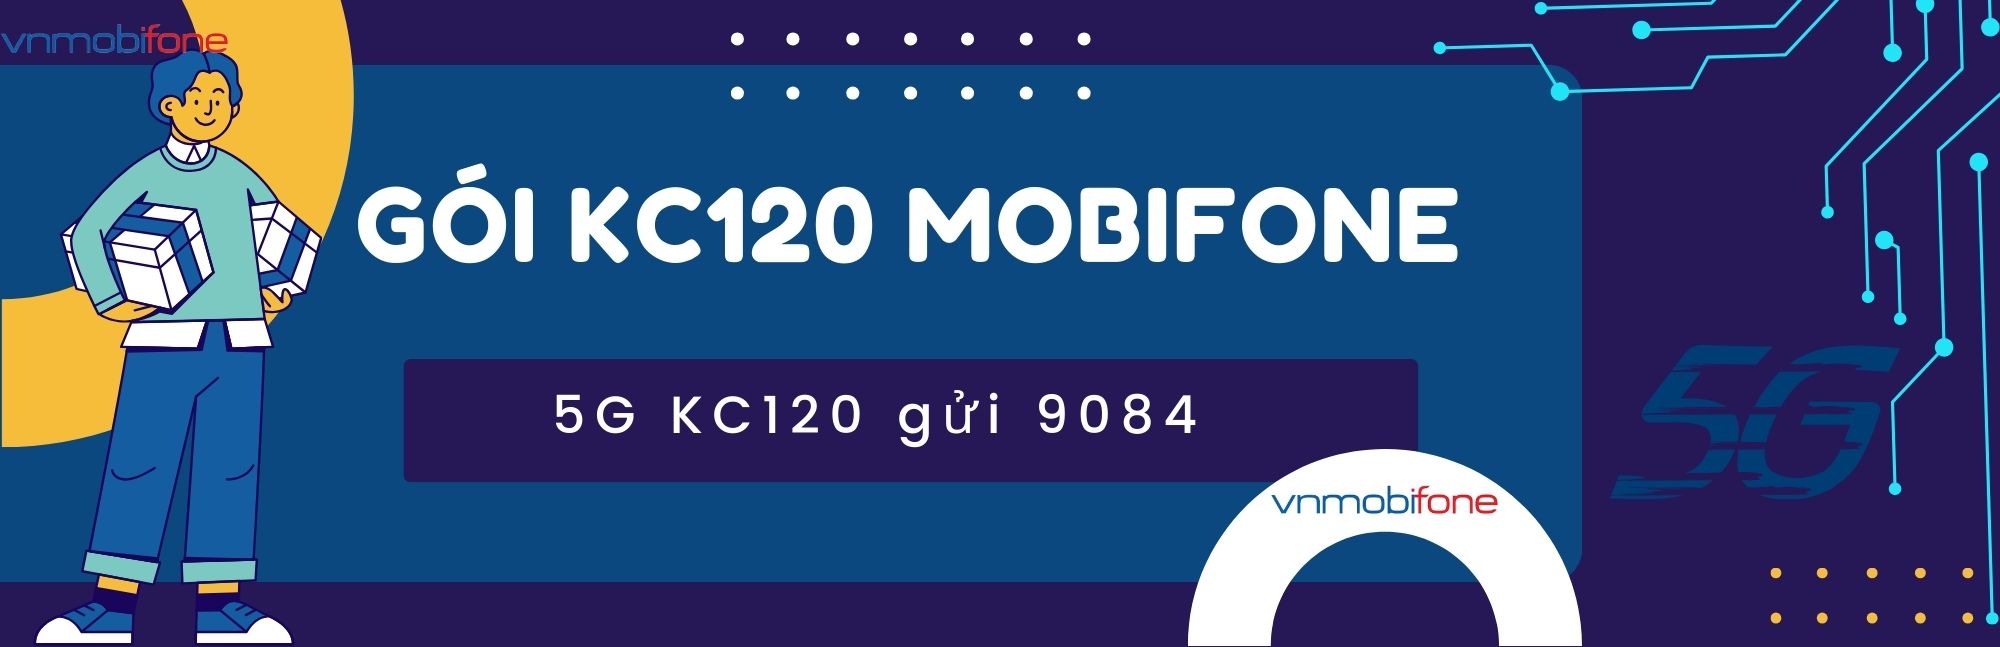 đăng ký kc120 mobifone